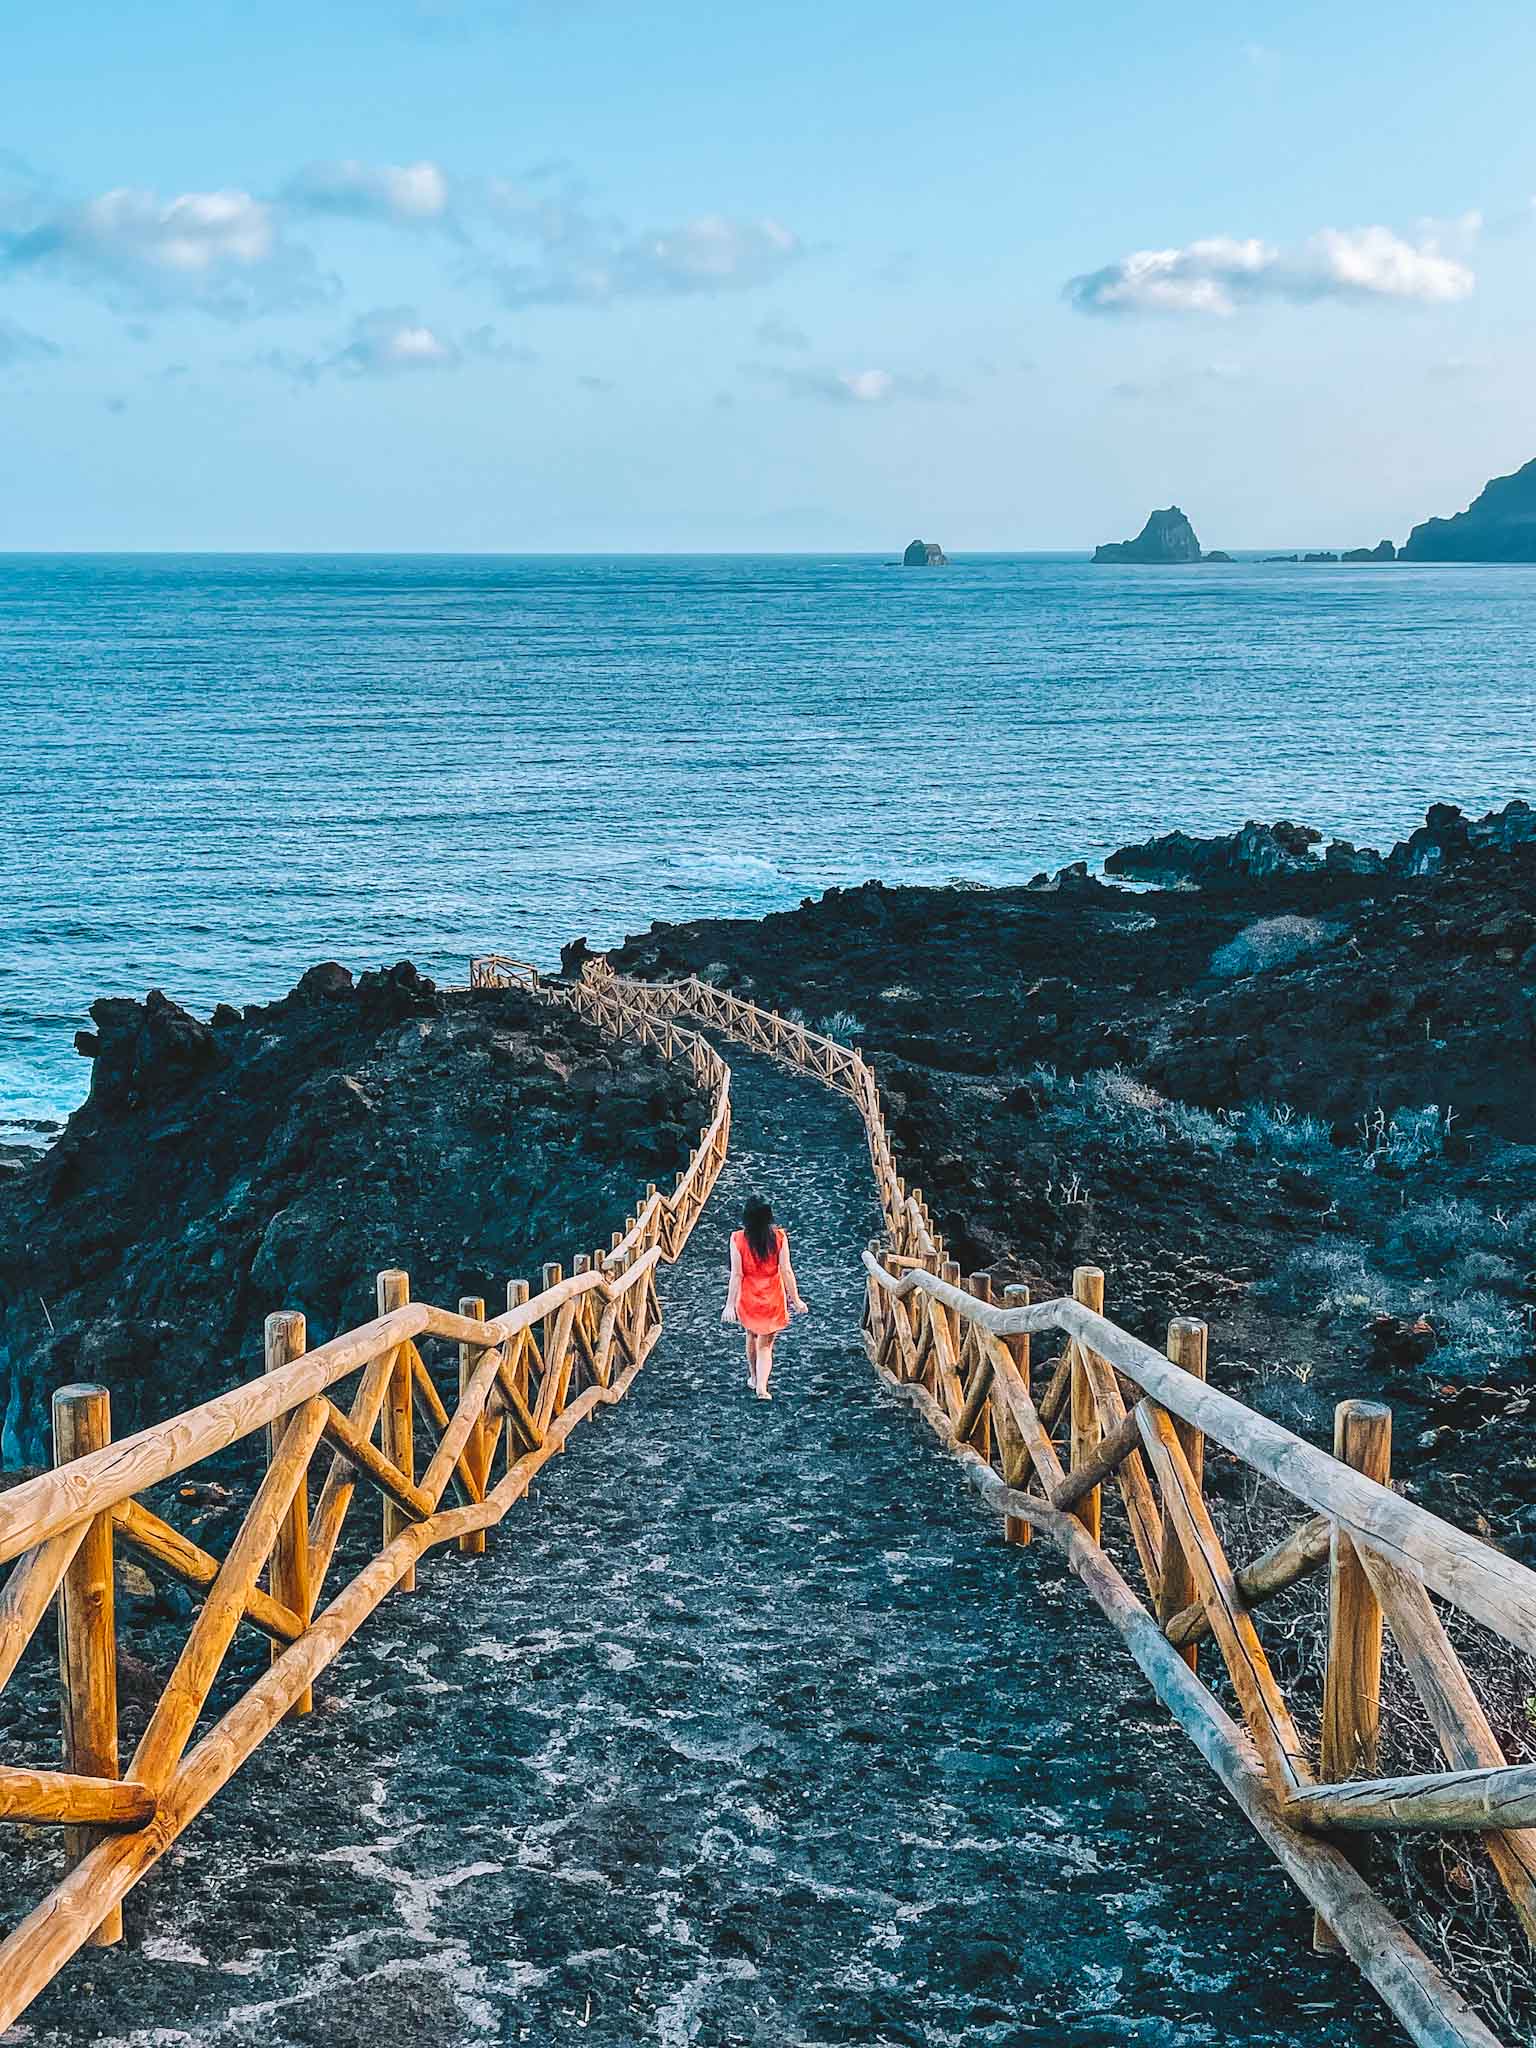 Best Instagram spots in El Hierro Canary Islands - Charco los Sargos